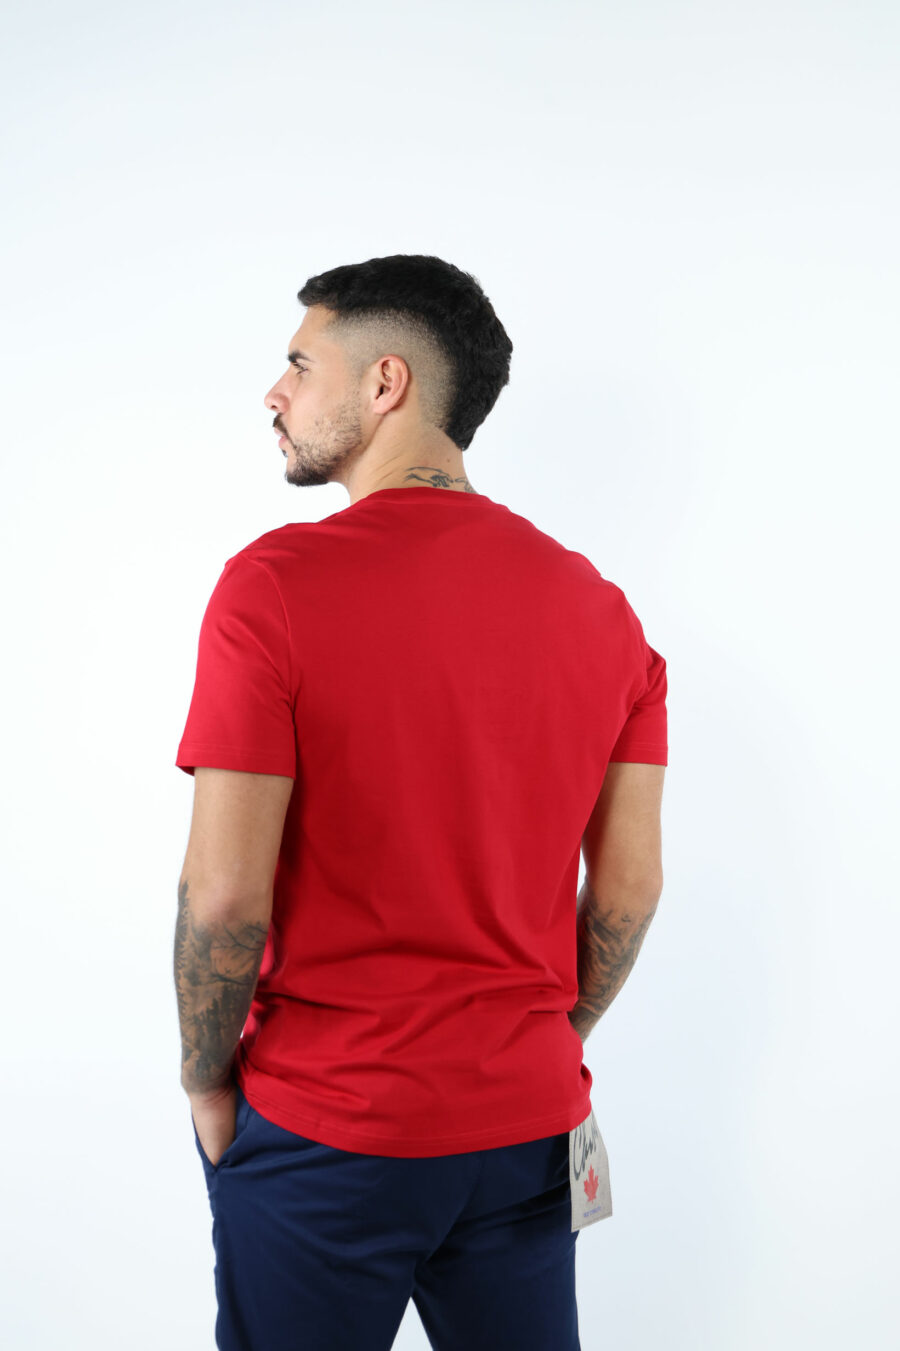 Camiseta roja "oversize" de algodón orgánico con maxilogo negro clásico - 106723